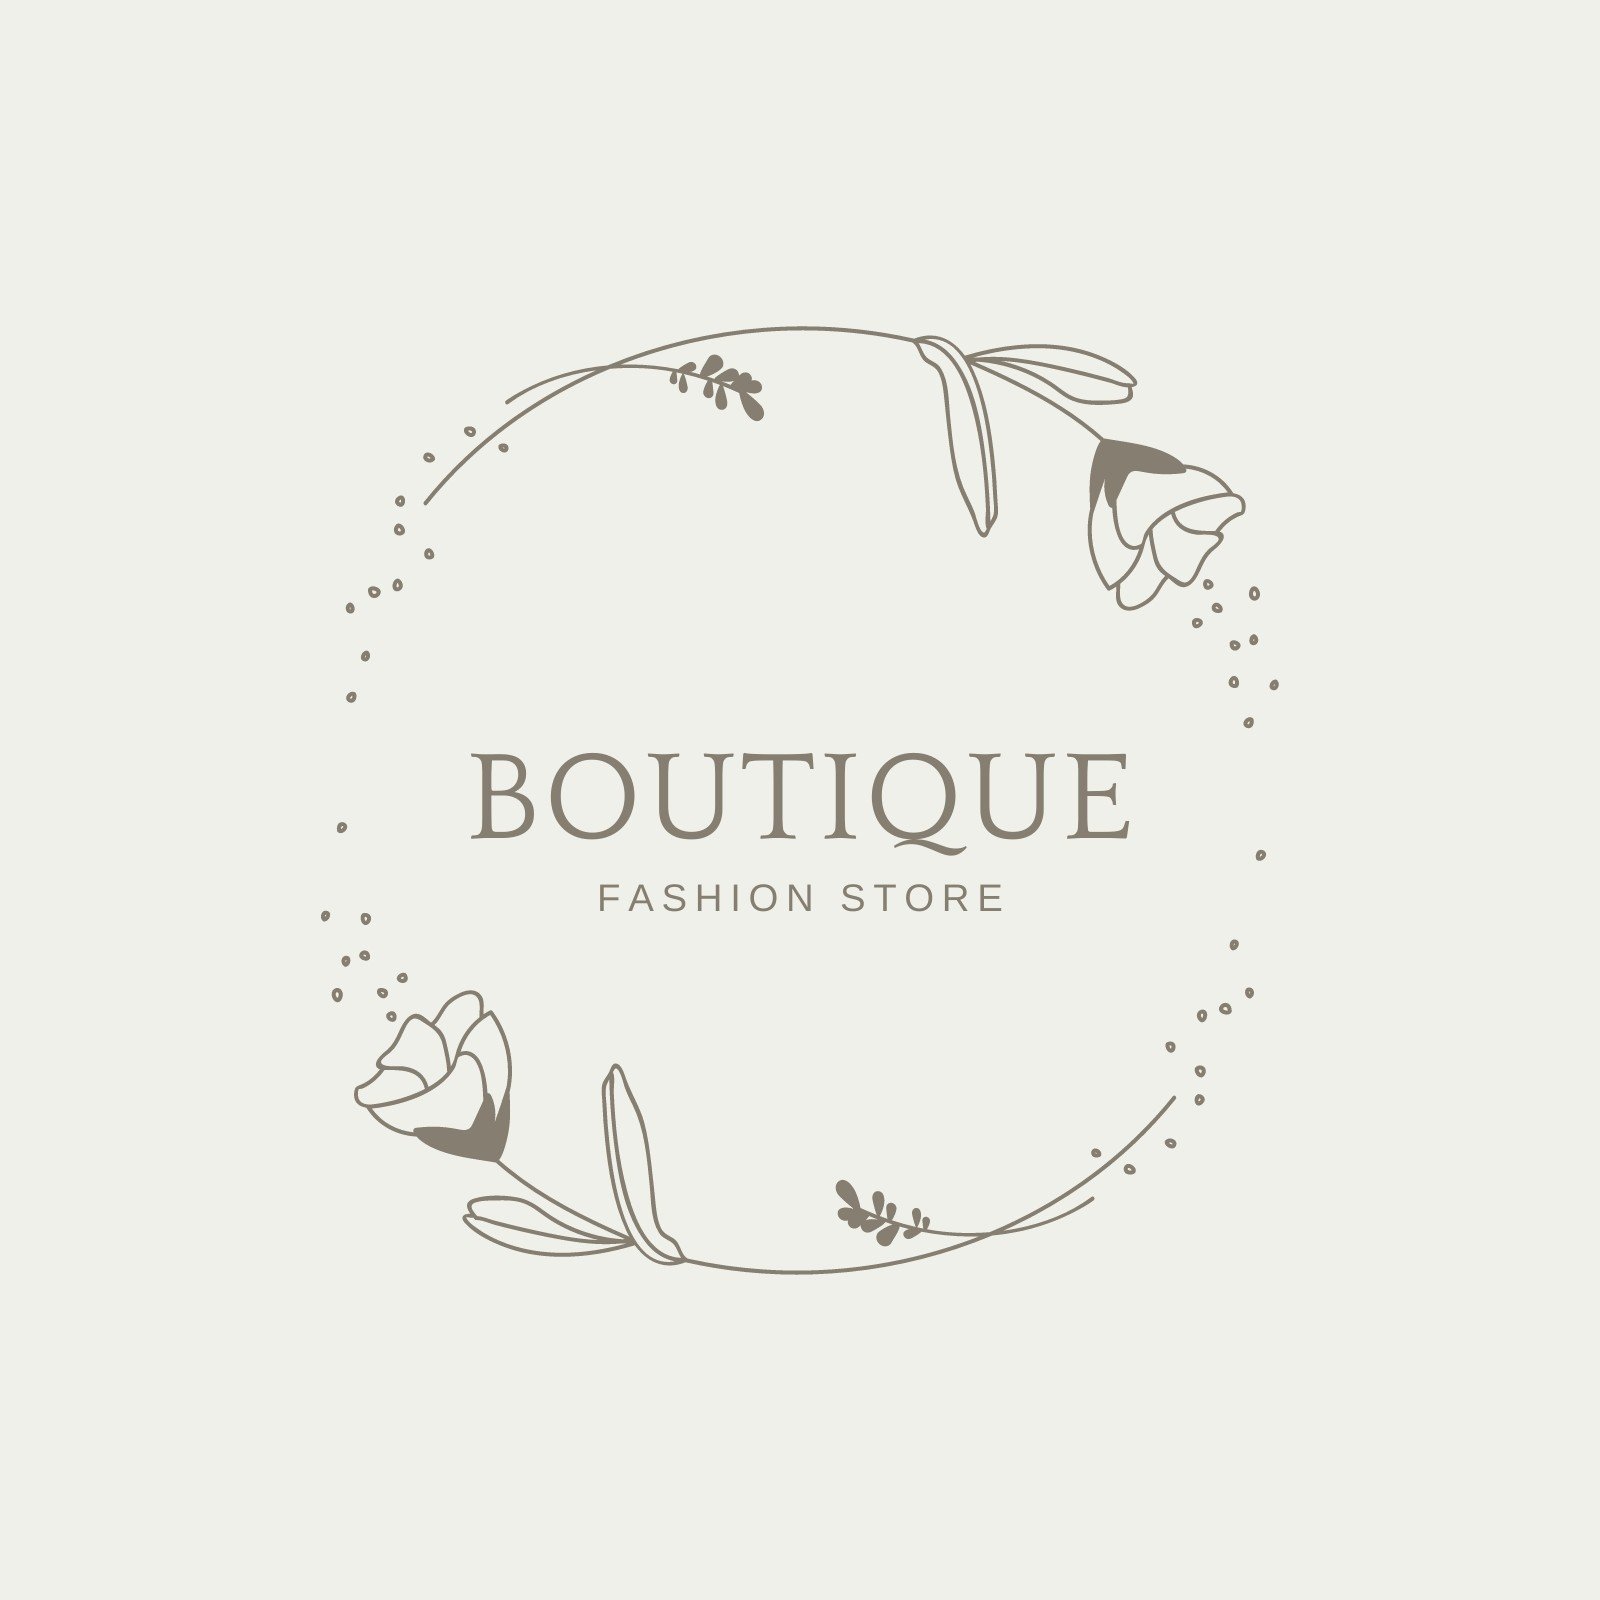 blank boutique logo templates